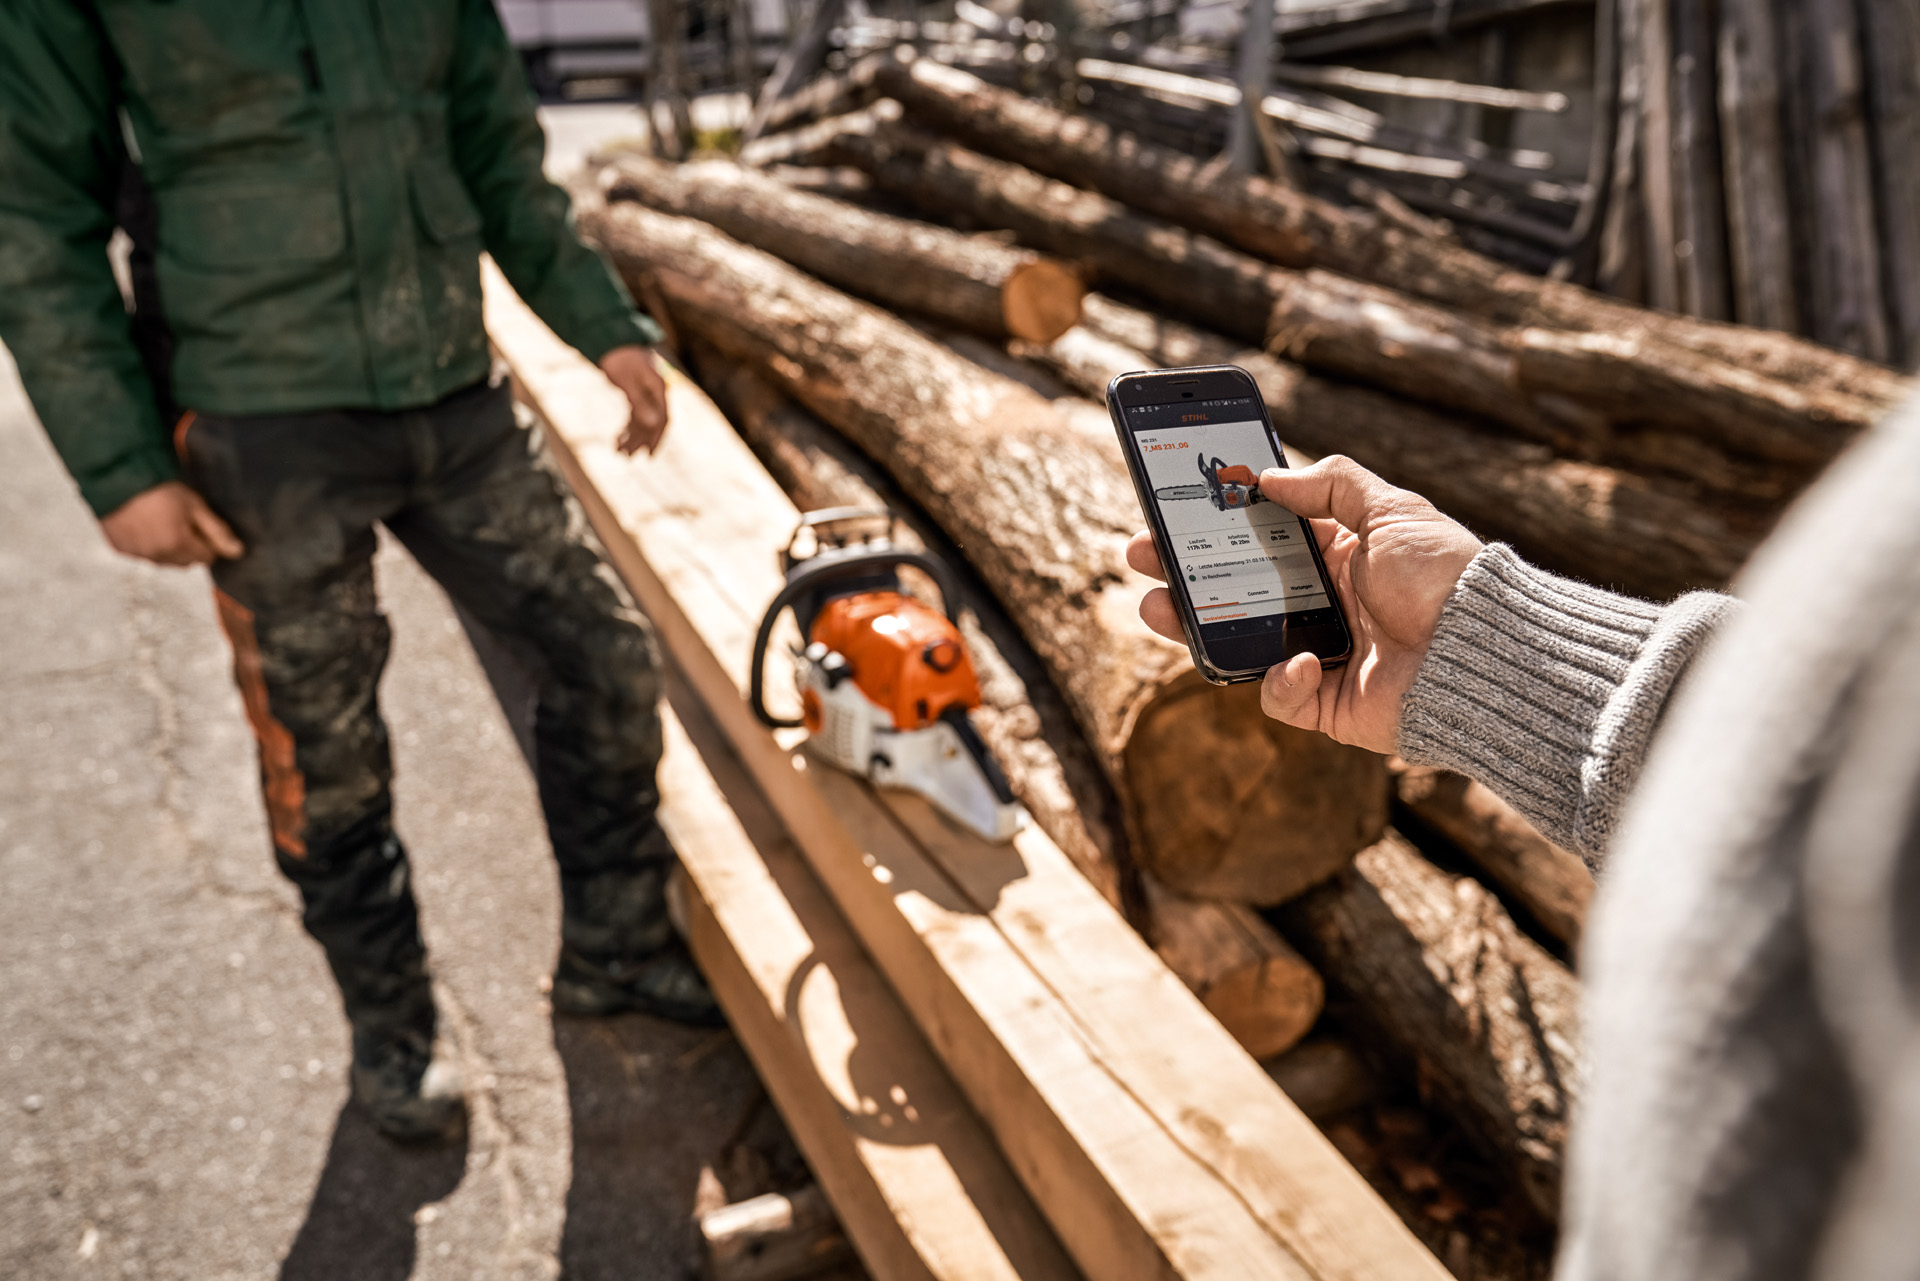 A aplicação STIHL connected em utilização num smartphone, com uma motosserra sobre uma pilha de madeira em segundo plano